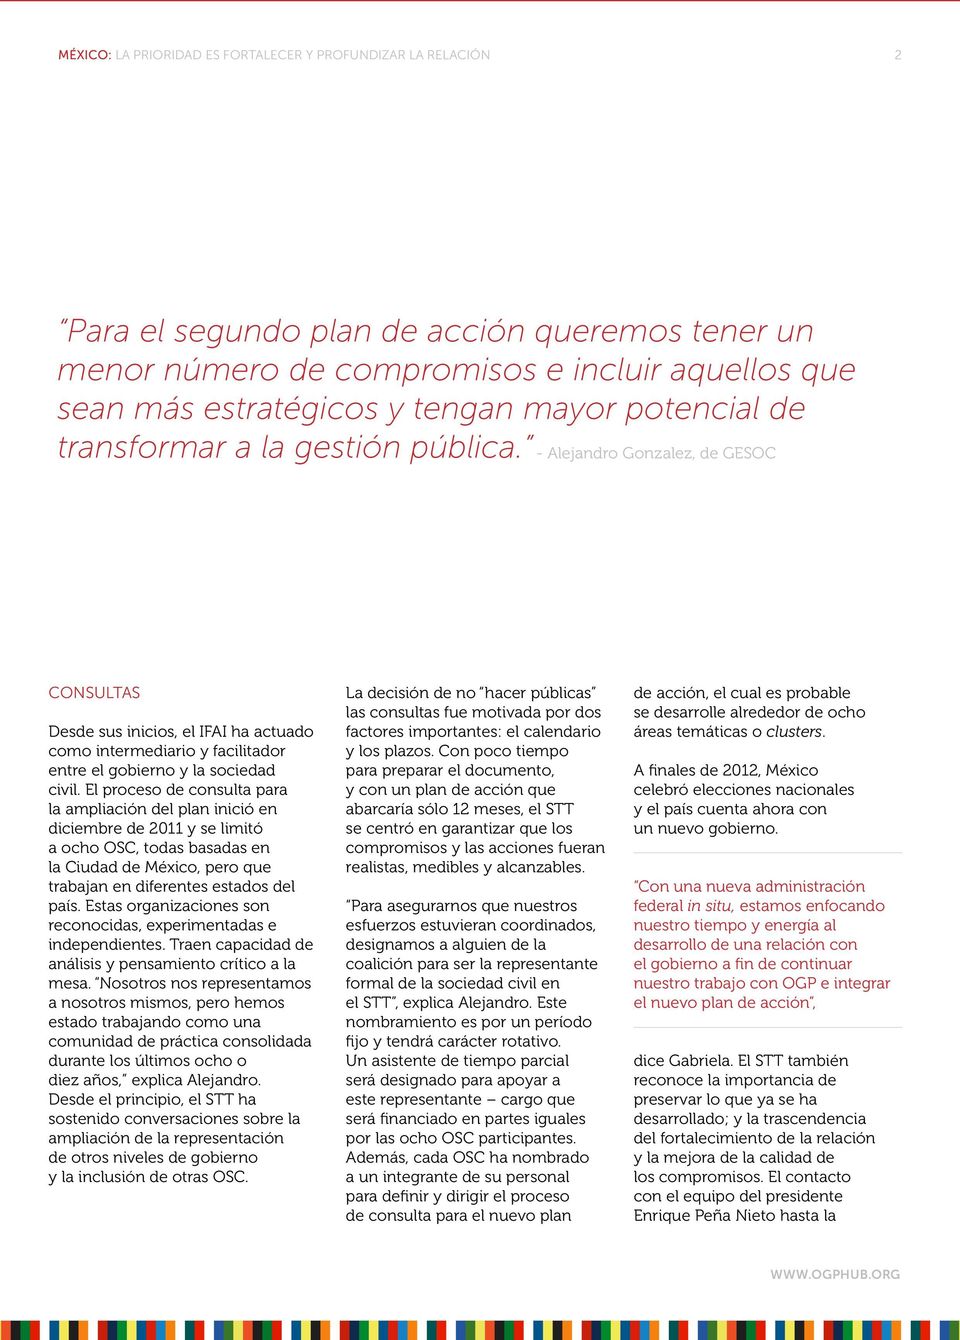 El proceso de consulta para la ampliación del plan inició en diciembre de 2011 y se limitó a ocho OSC, todas basadas en la Ciudad de México, pero que trabajan en diferentes estados del país.